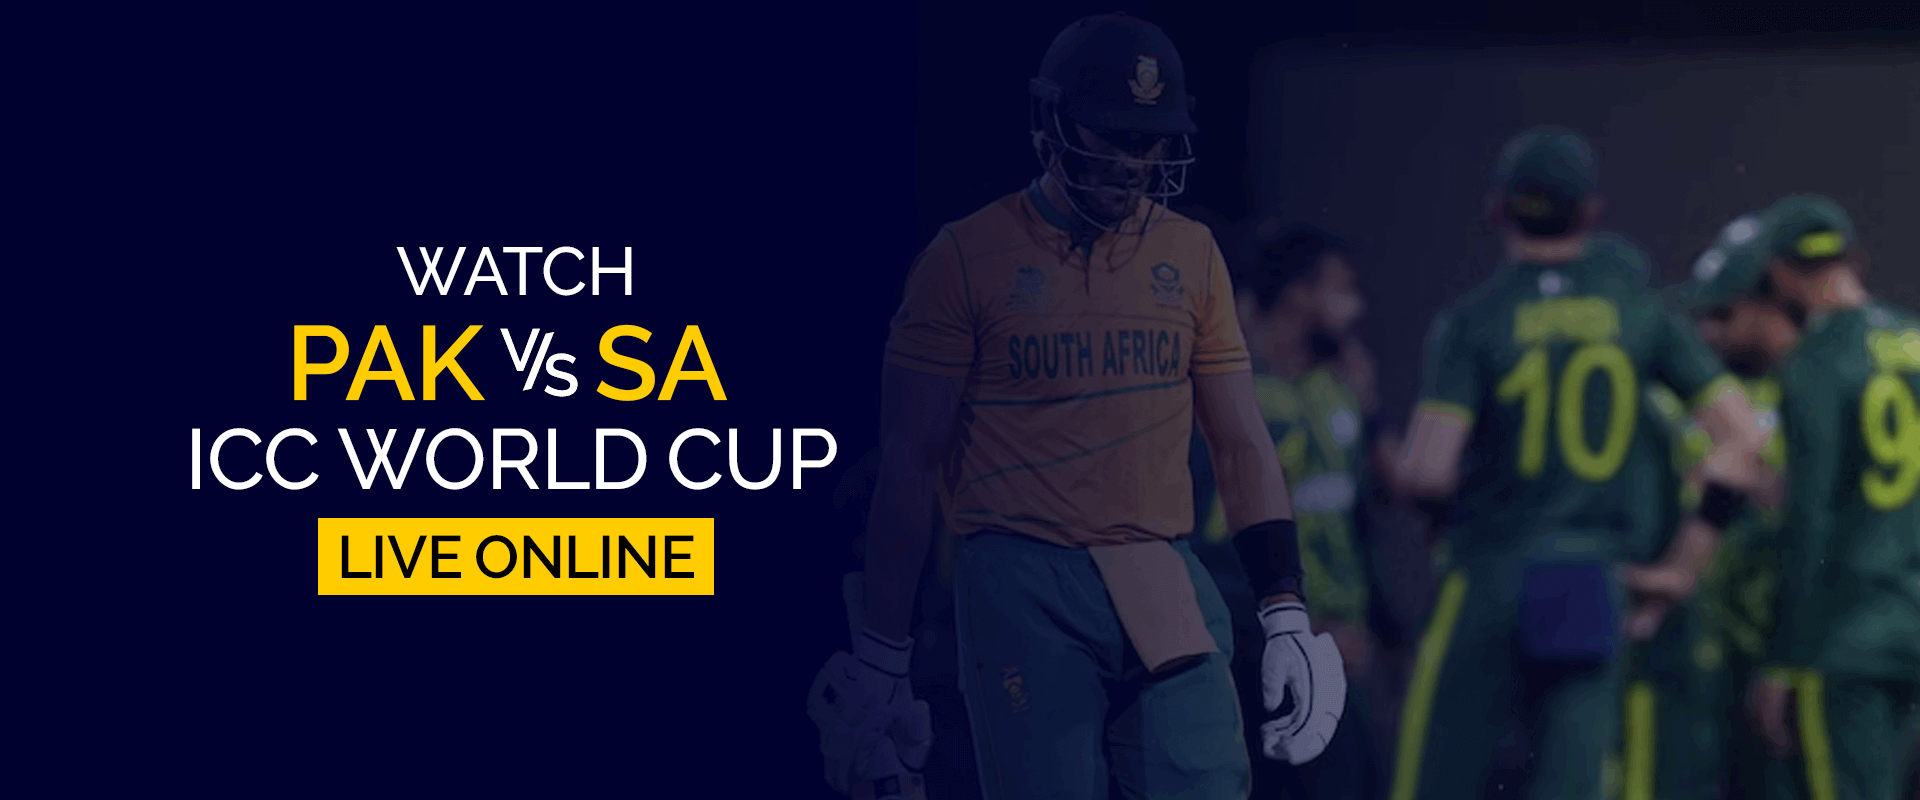 Guarda la Coppa del mondo ICC Pakistan-Sudafrica in diretta online